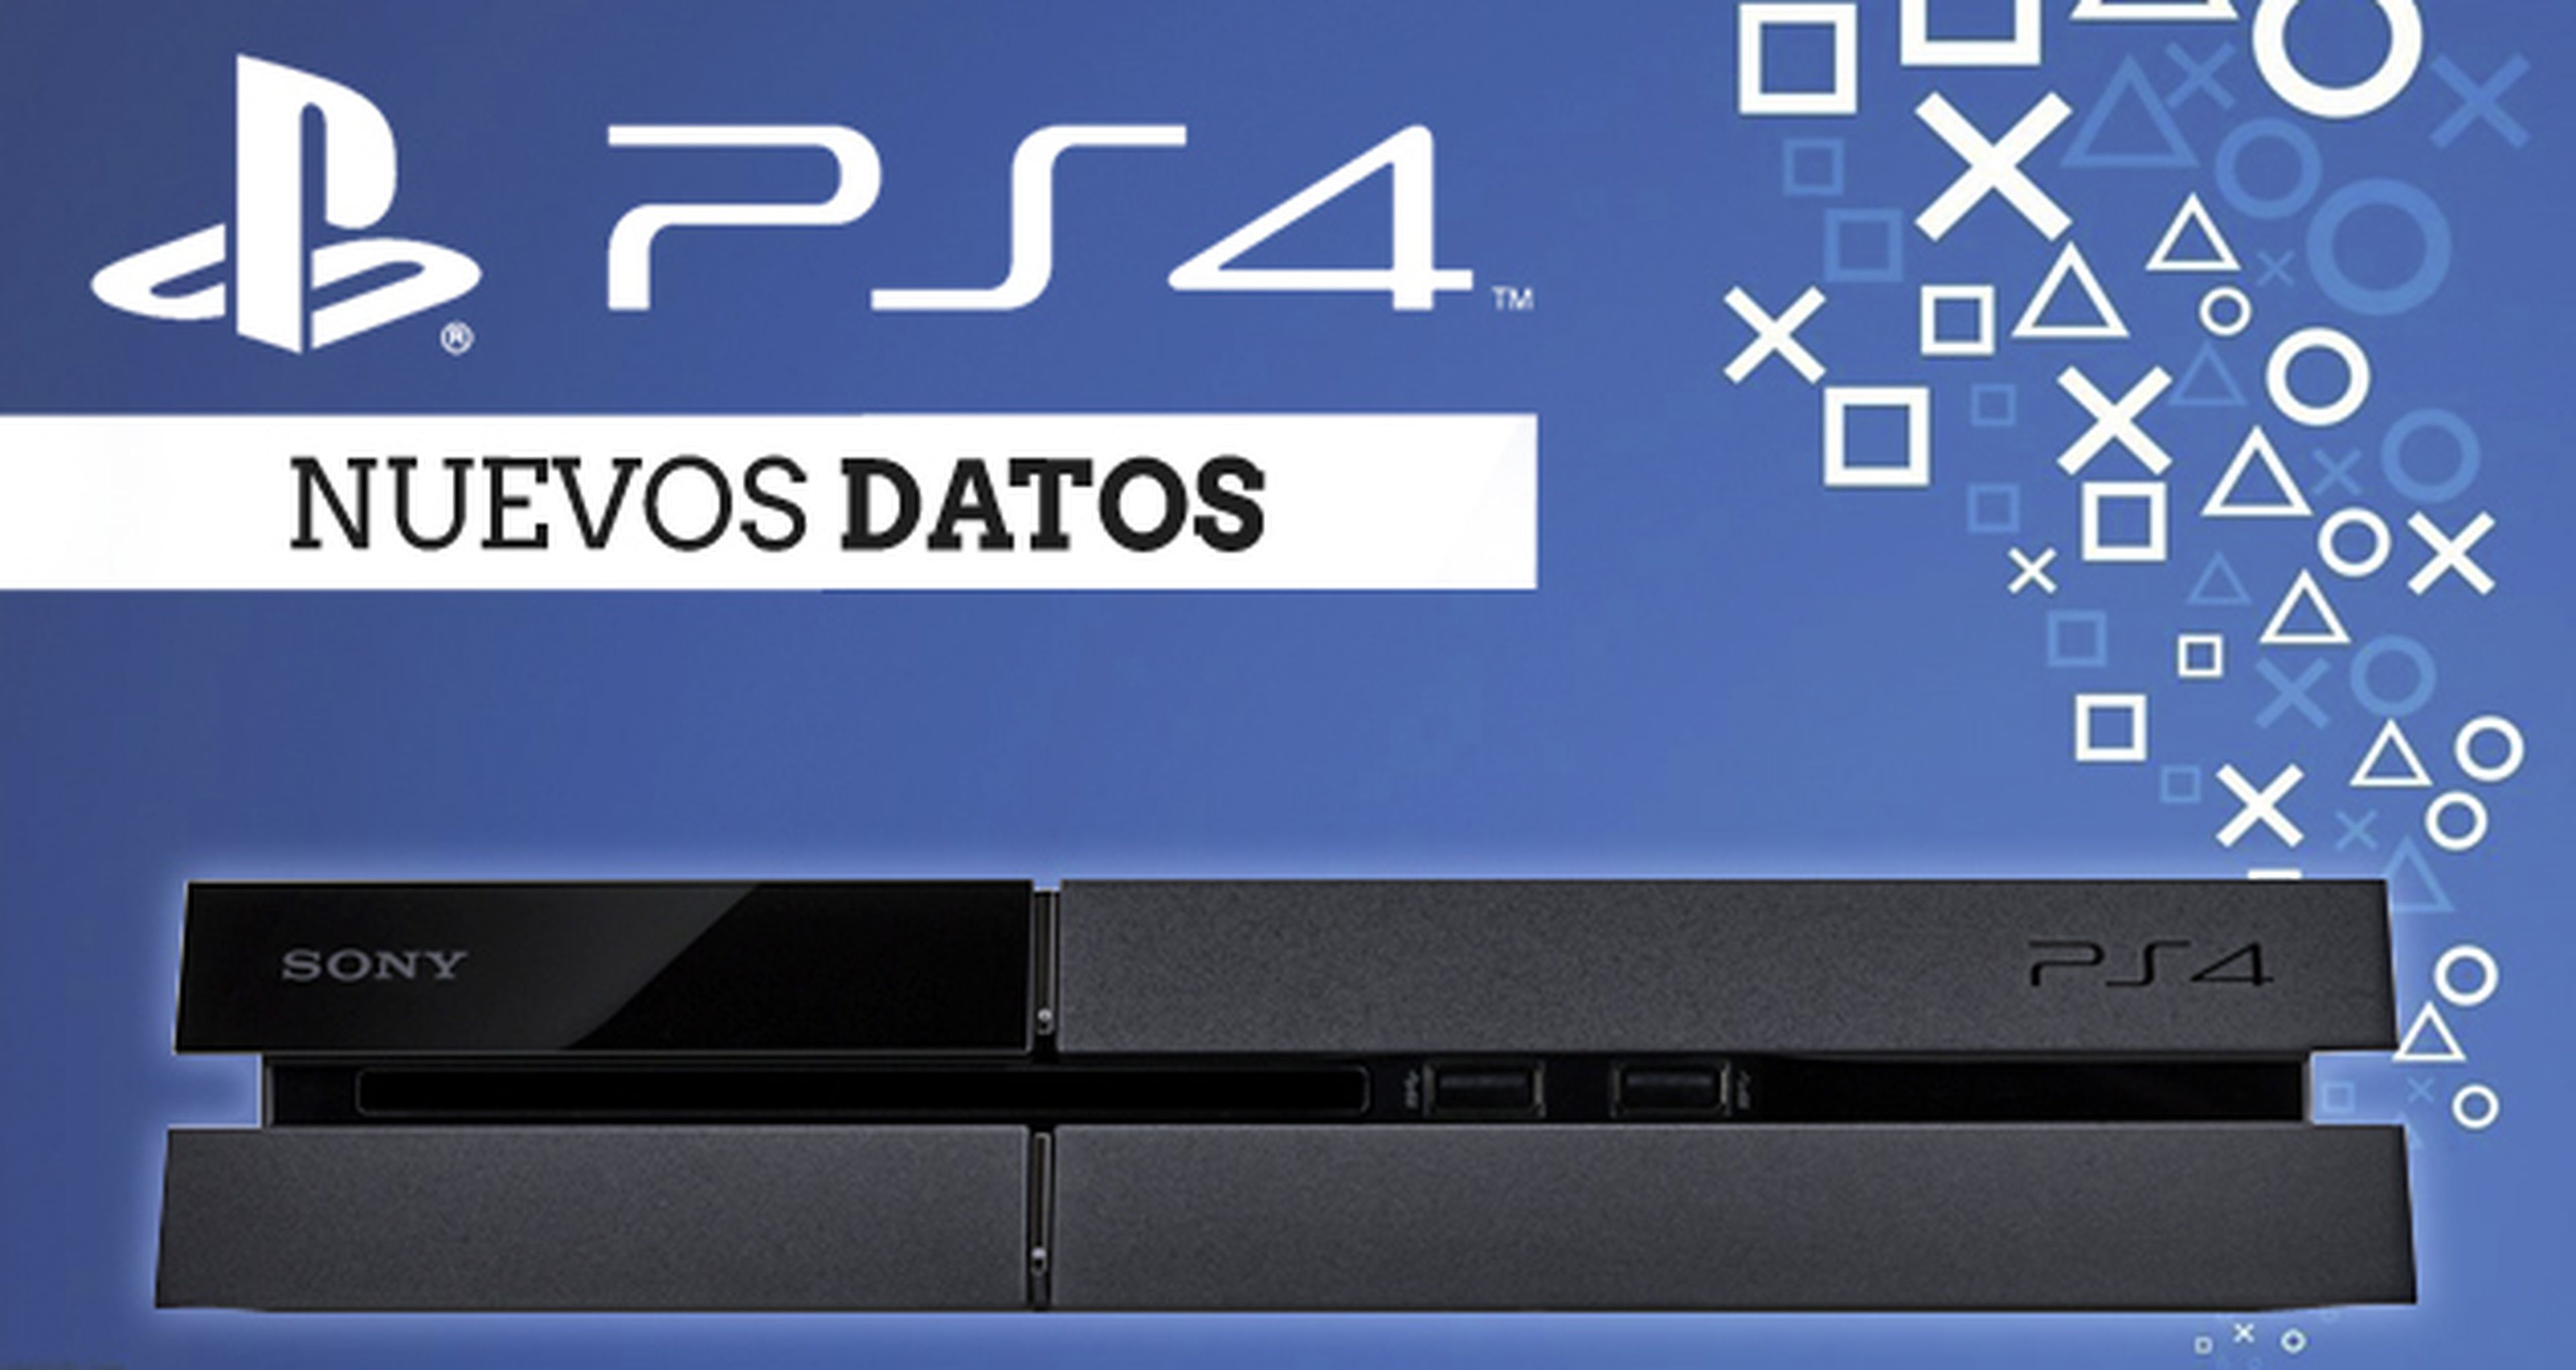 E3 2013: Sony confirma más datos sobre PS4